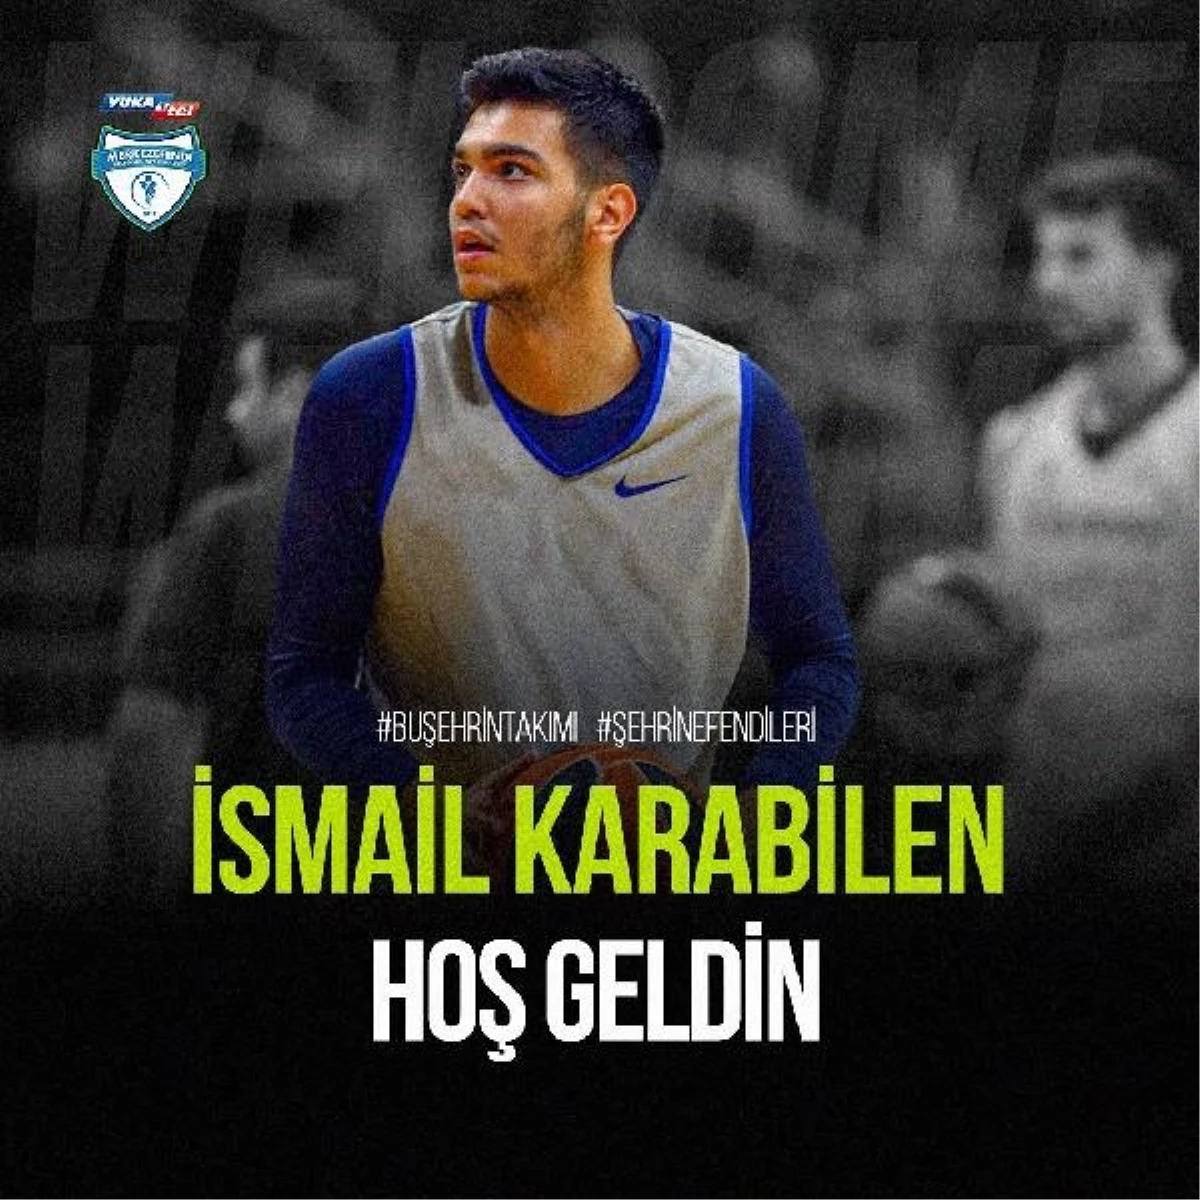 Yukatel Merkezefendi Belediyesi Basket, İsmail Karabilen ile anlaştı